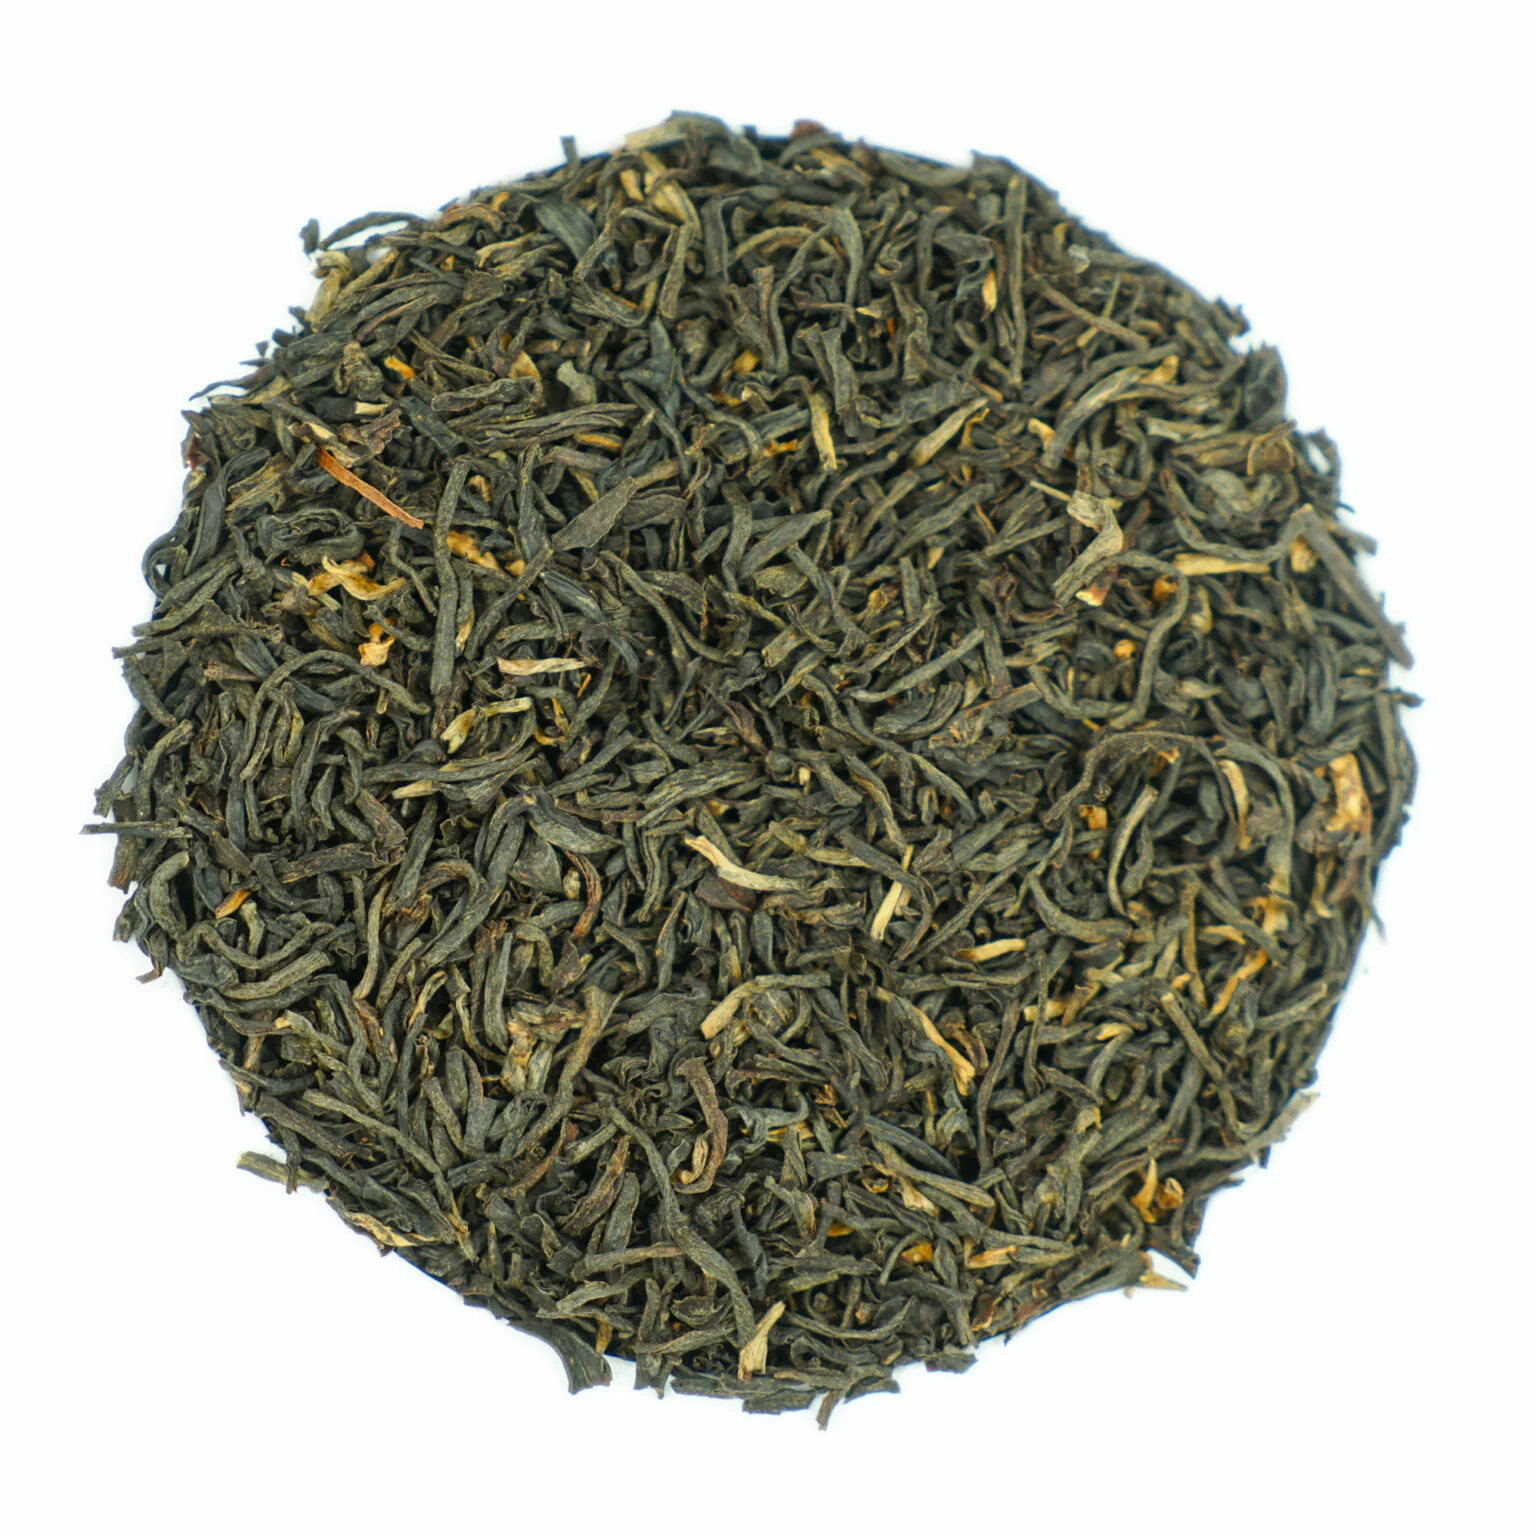 Herbata Assam Harmutty – Wyjątkowy smak Indii